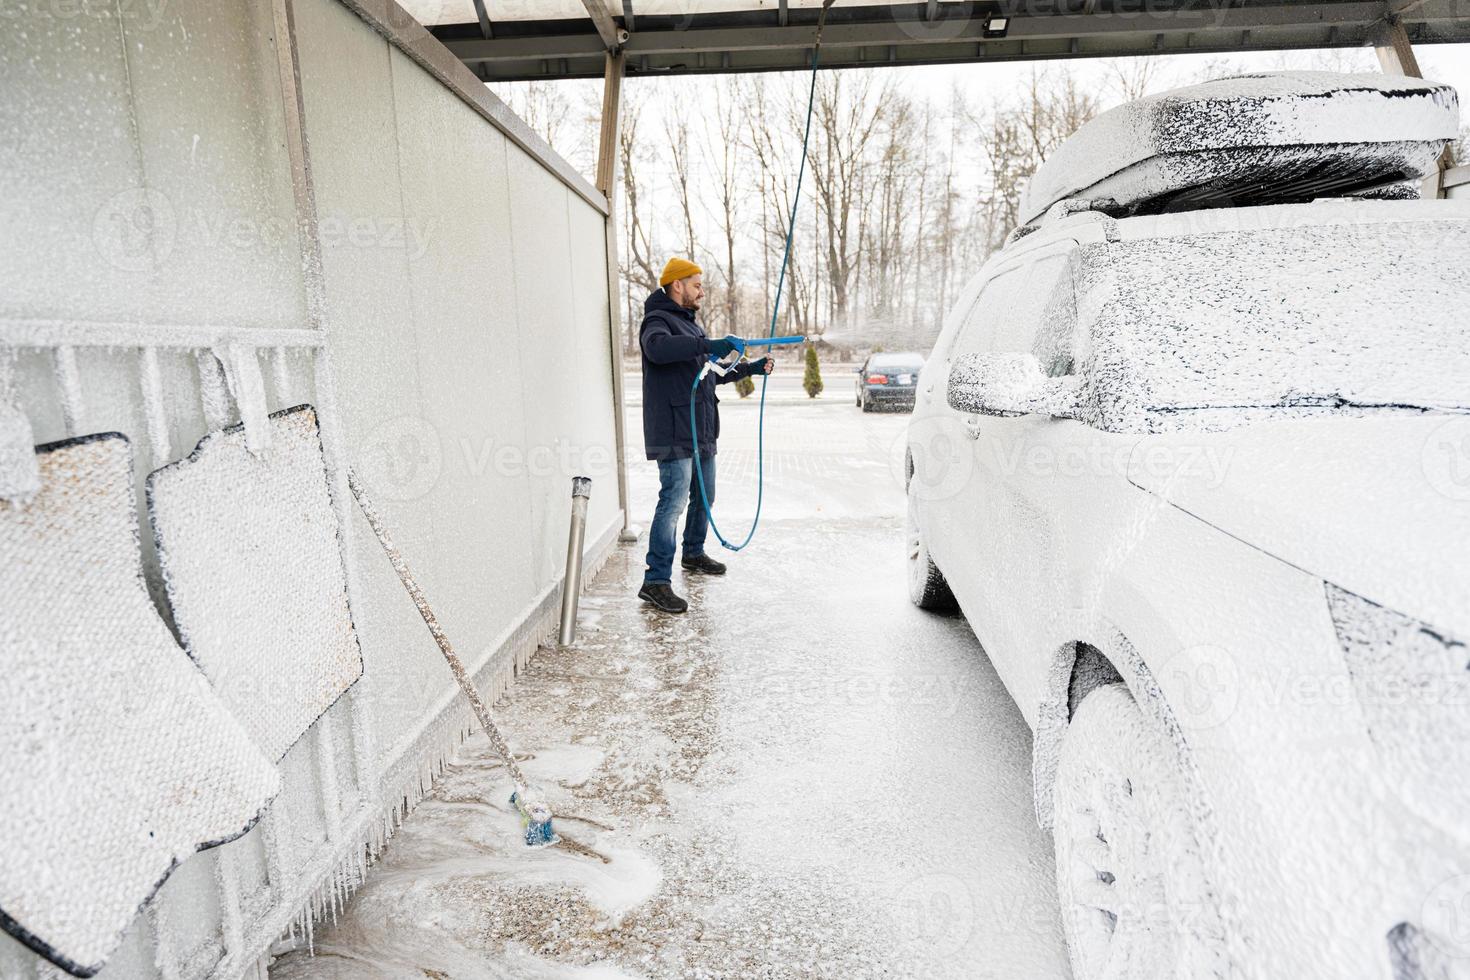 homem lavando carro suv americano com rack de teto em uma lavagem self-service em clima frio. foto